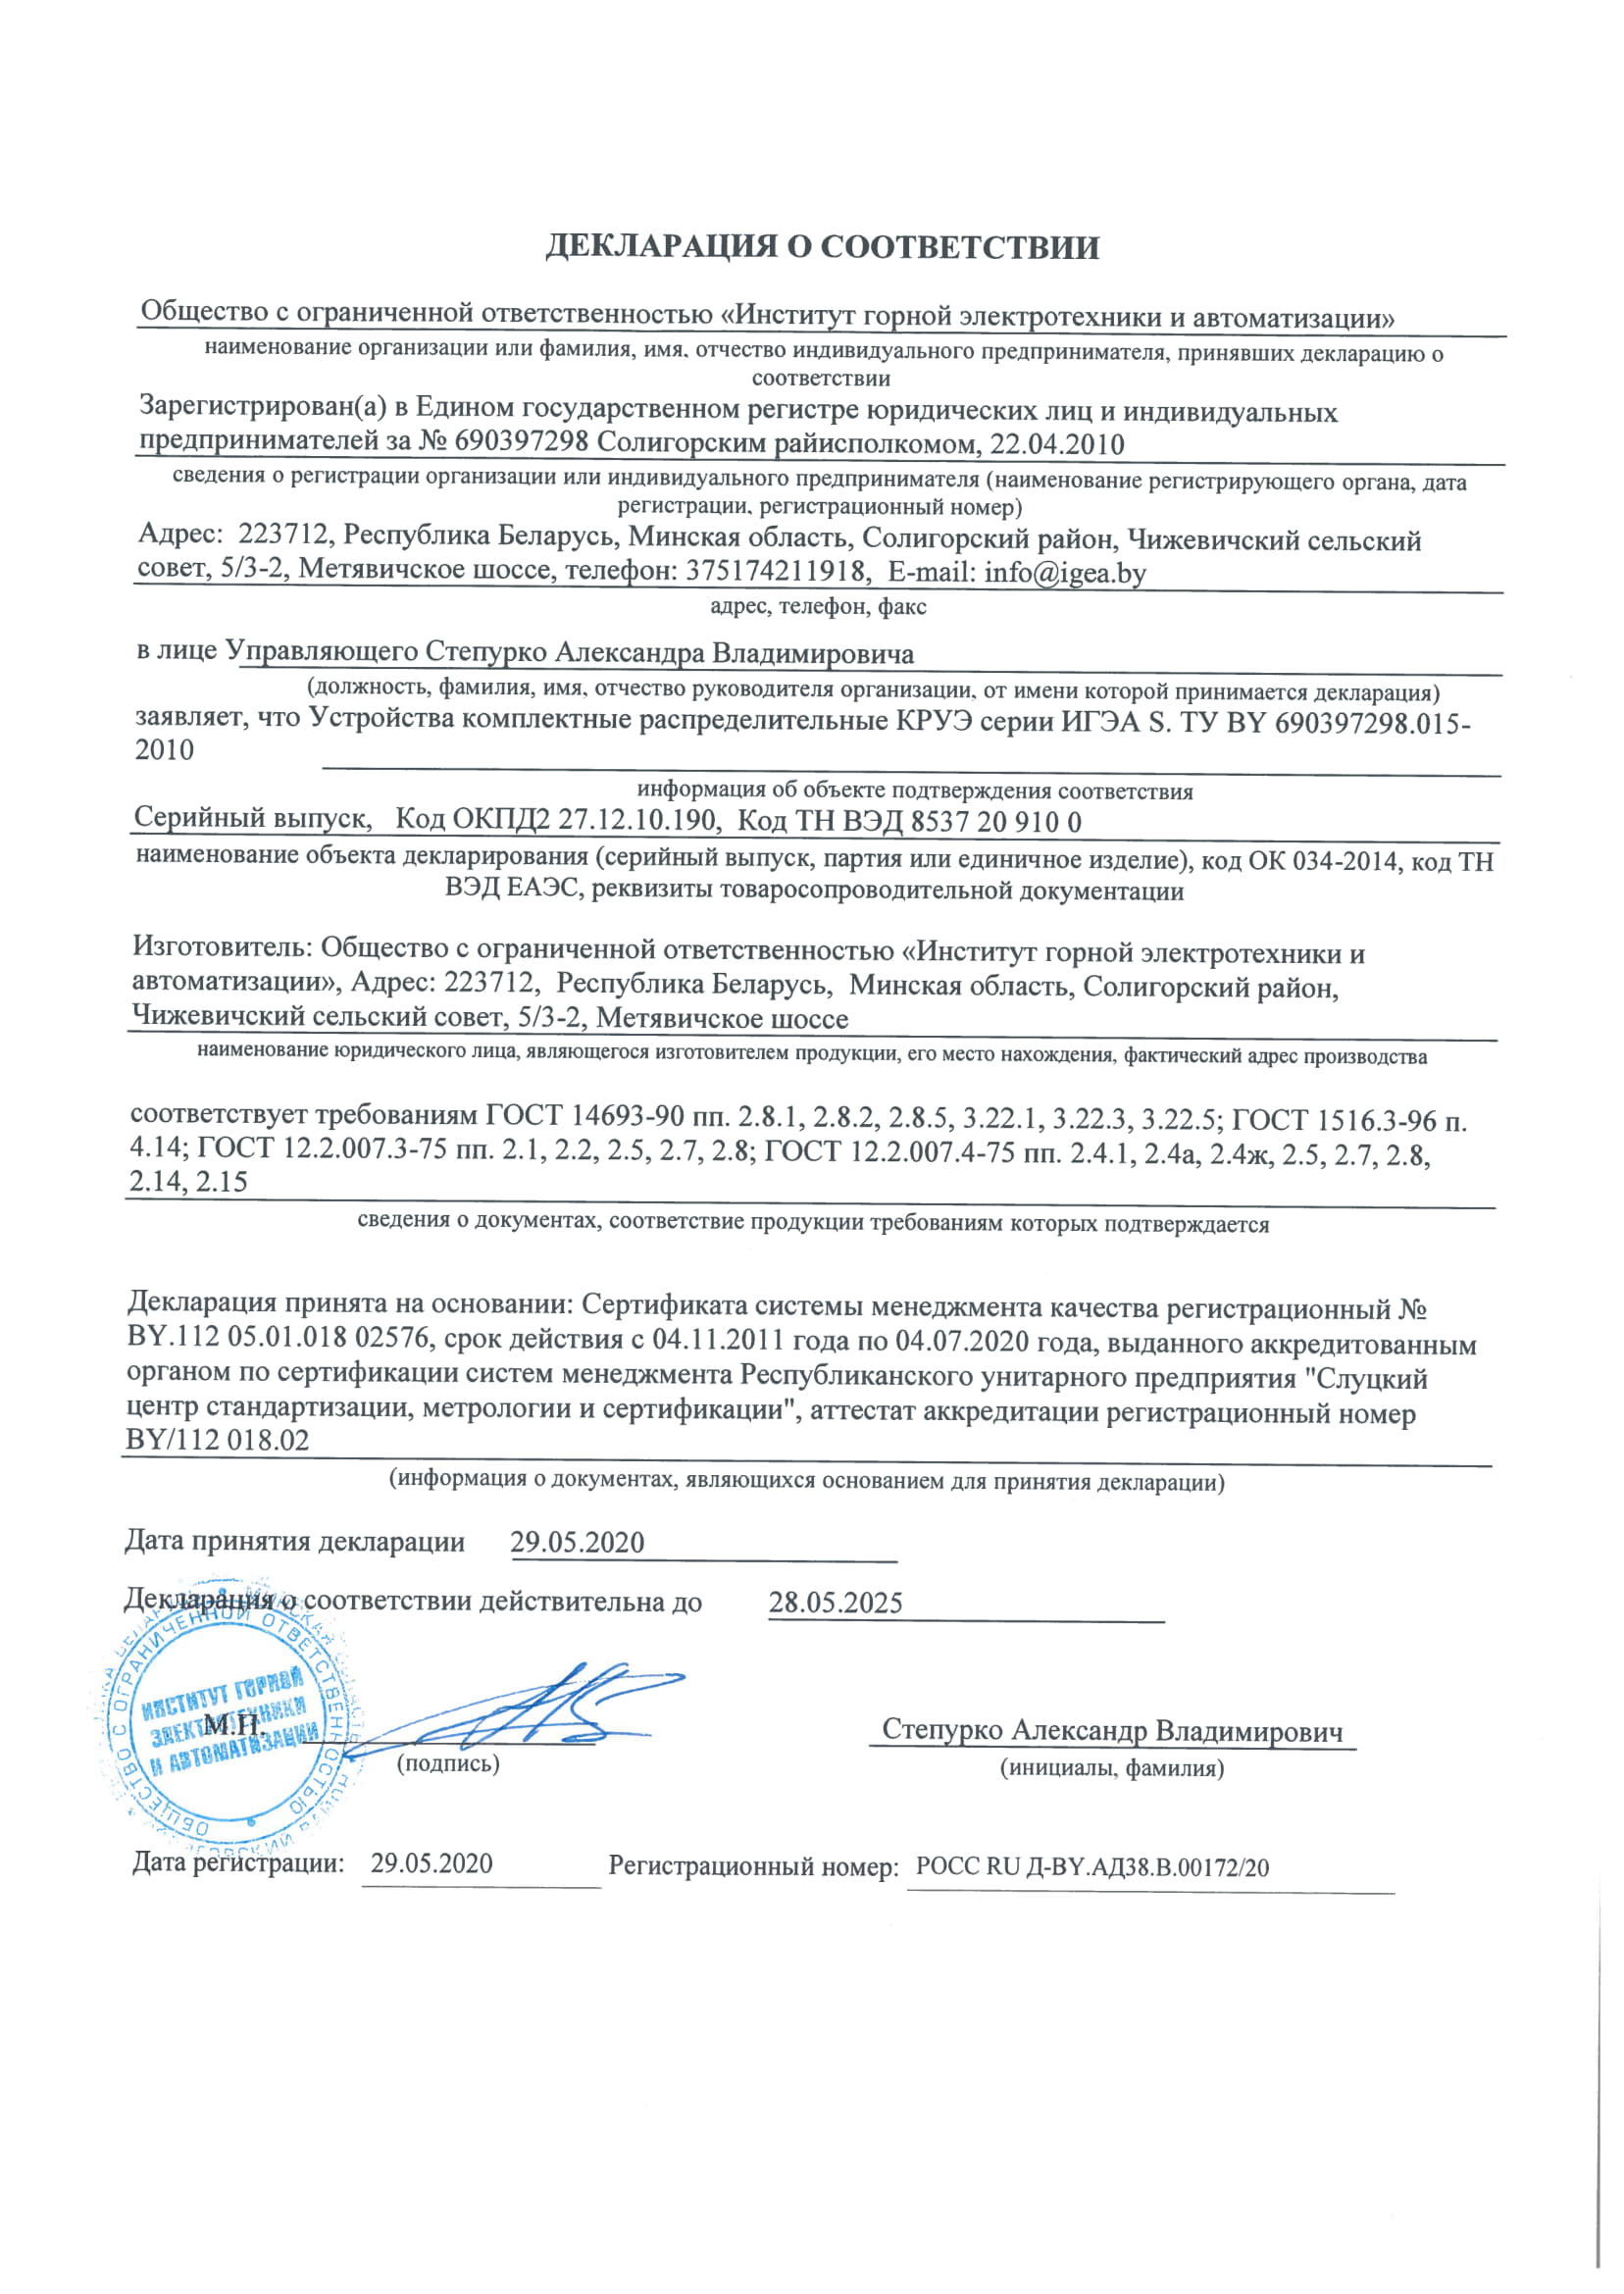 Декларация о соответствии ГОСТ Р  №РОСС RU Д-BY.АД38.В.00172/20 до 28.05.2025